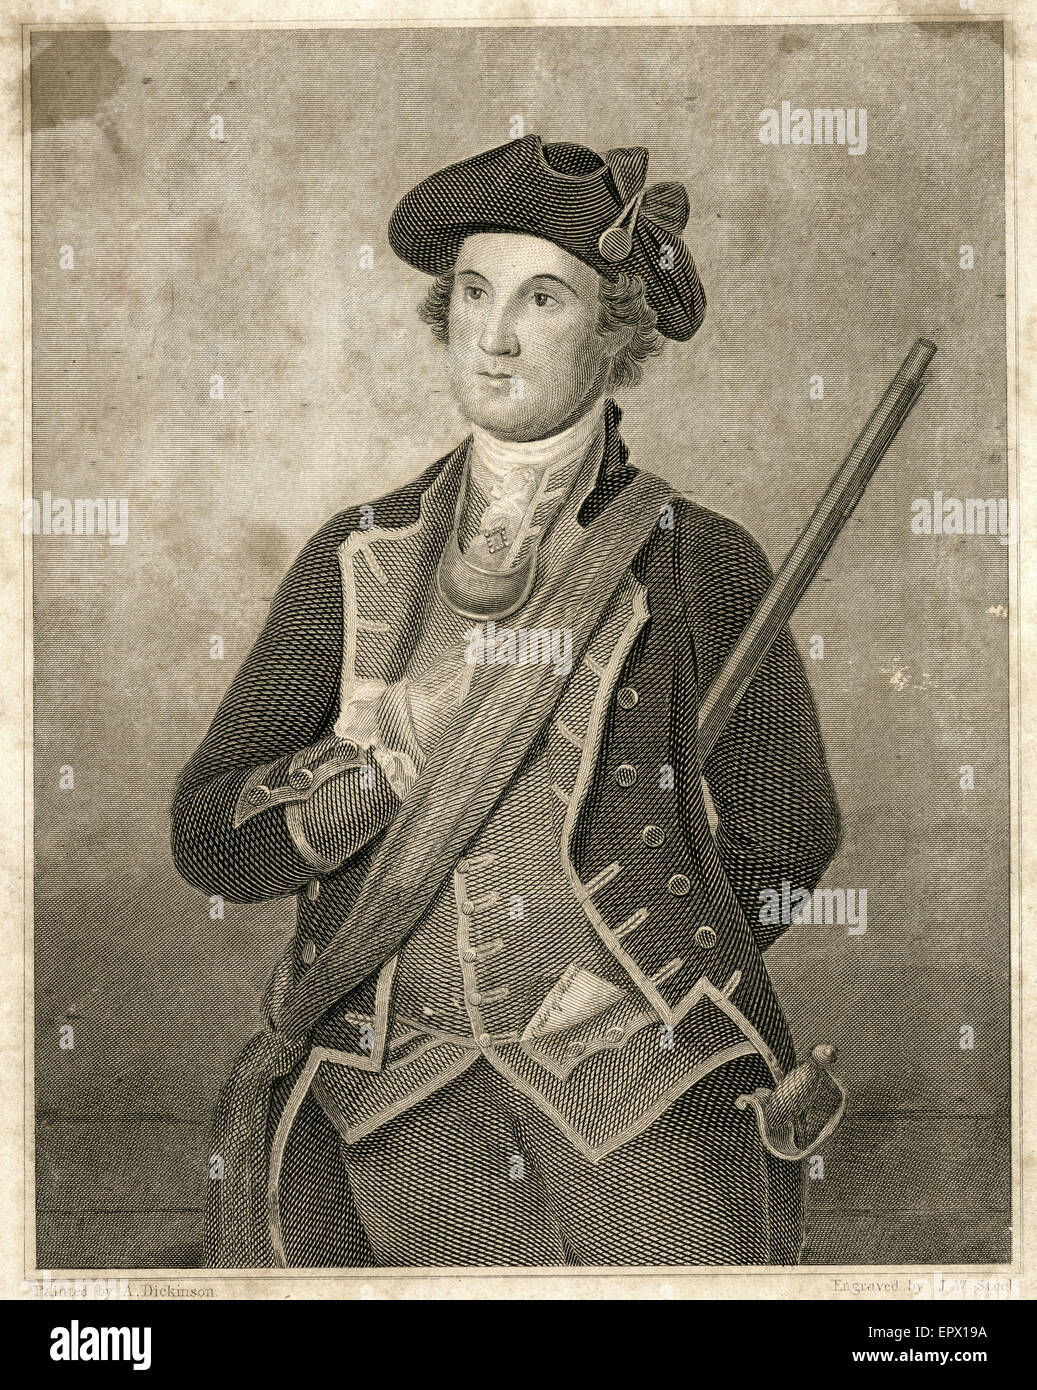 Antique c1820 incisione in acciaio di George Washington nel 1772, 40 anni. George Washington (1732-1799) è stato il primo Presidente degli Stati Uniti (1789-97), il Comandante in Capo dell'esercito continentale durante la guerra rivoluzionaria americana e uno dei padri fondatori degli Stati Uniti. Foto Stock